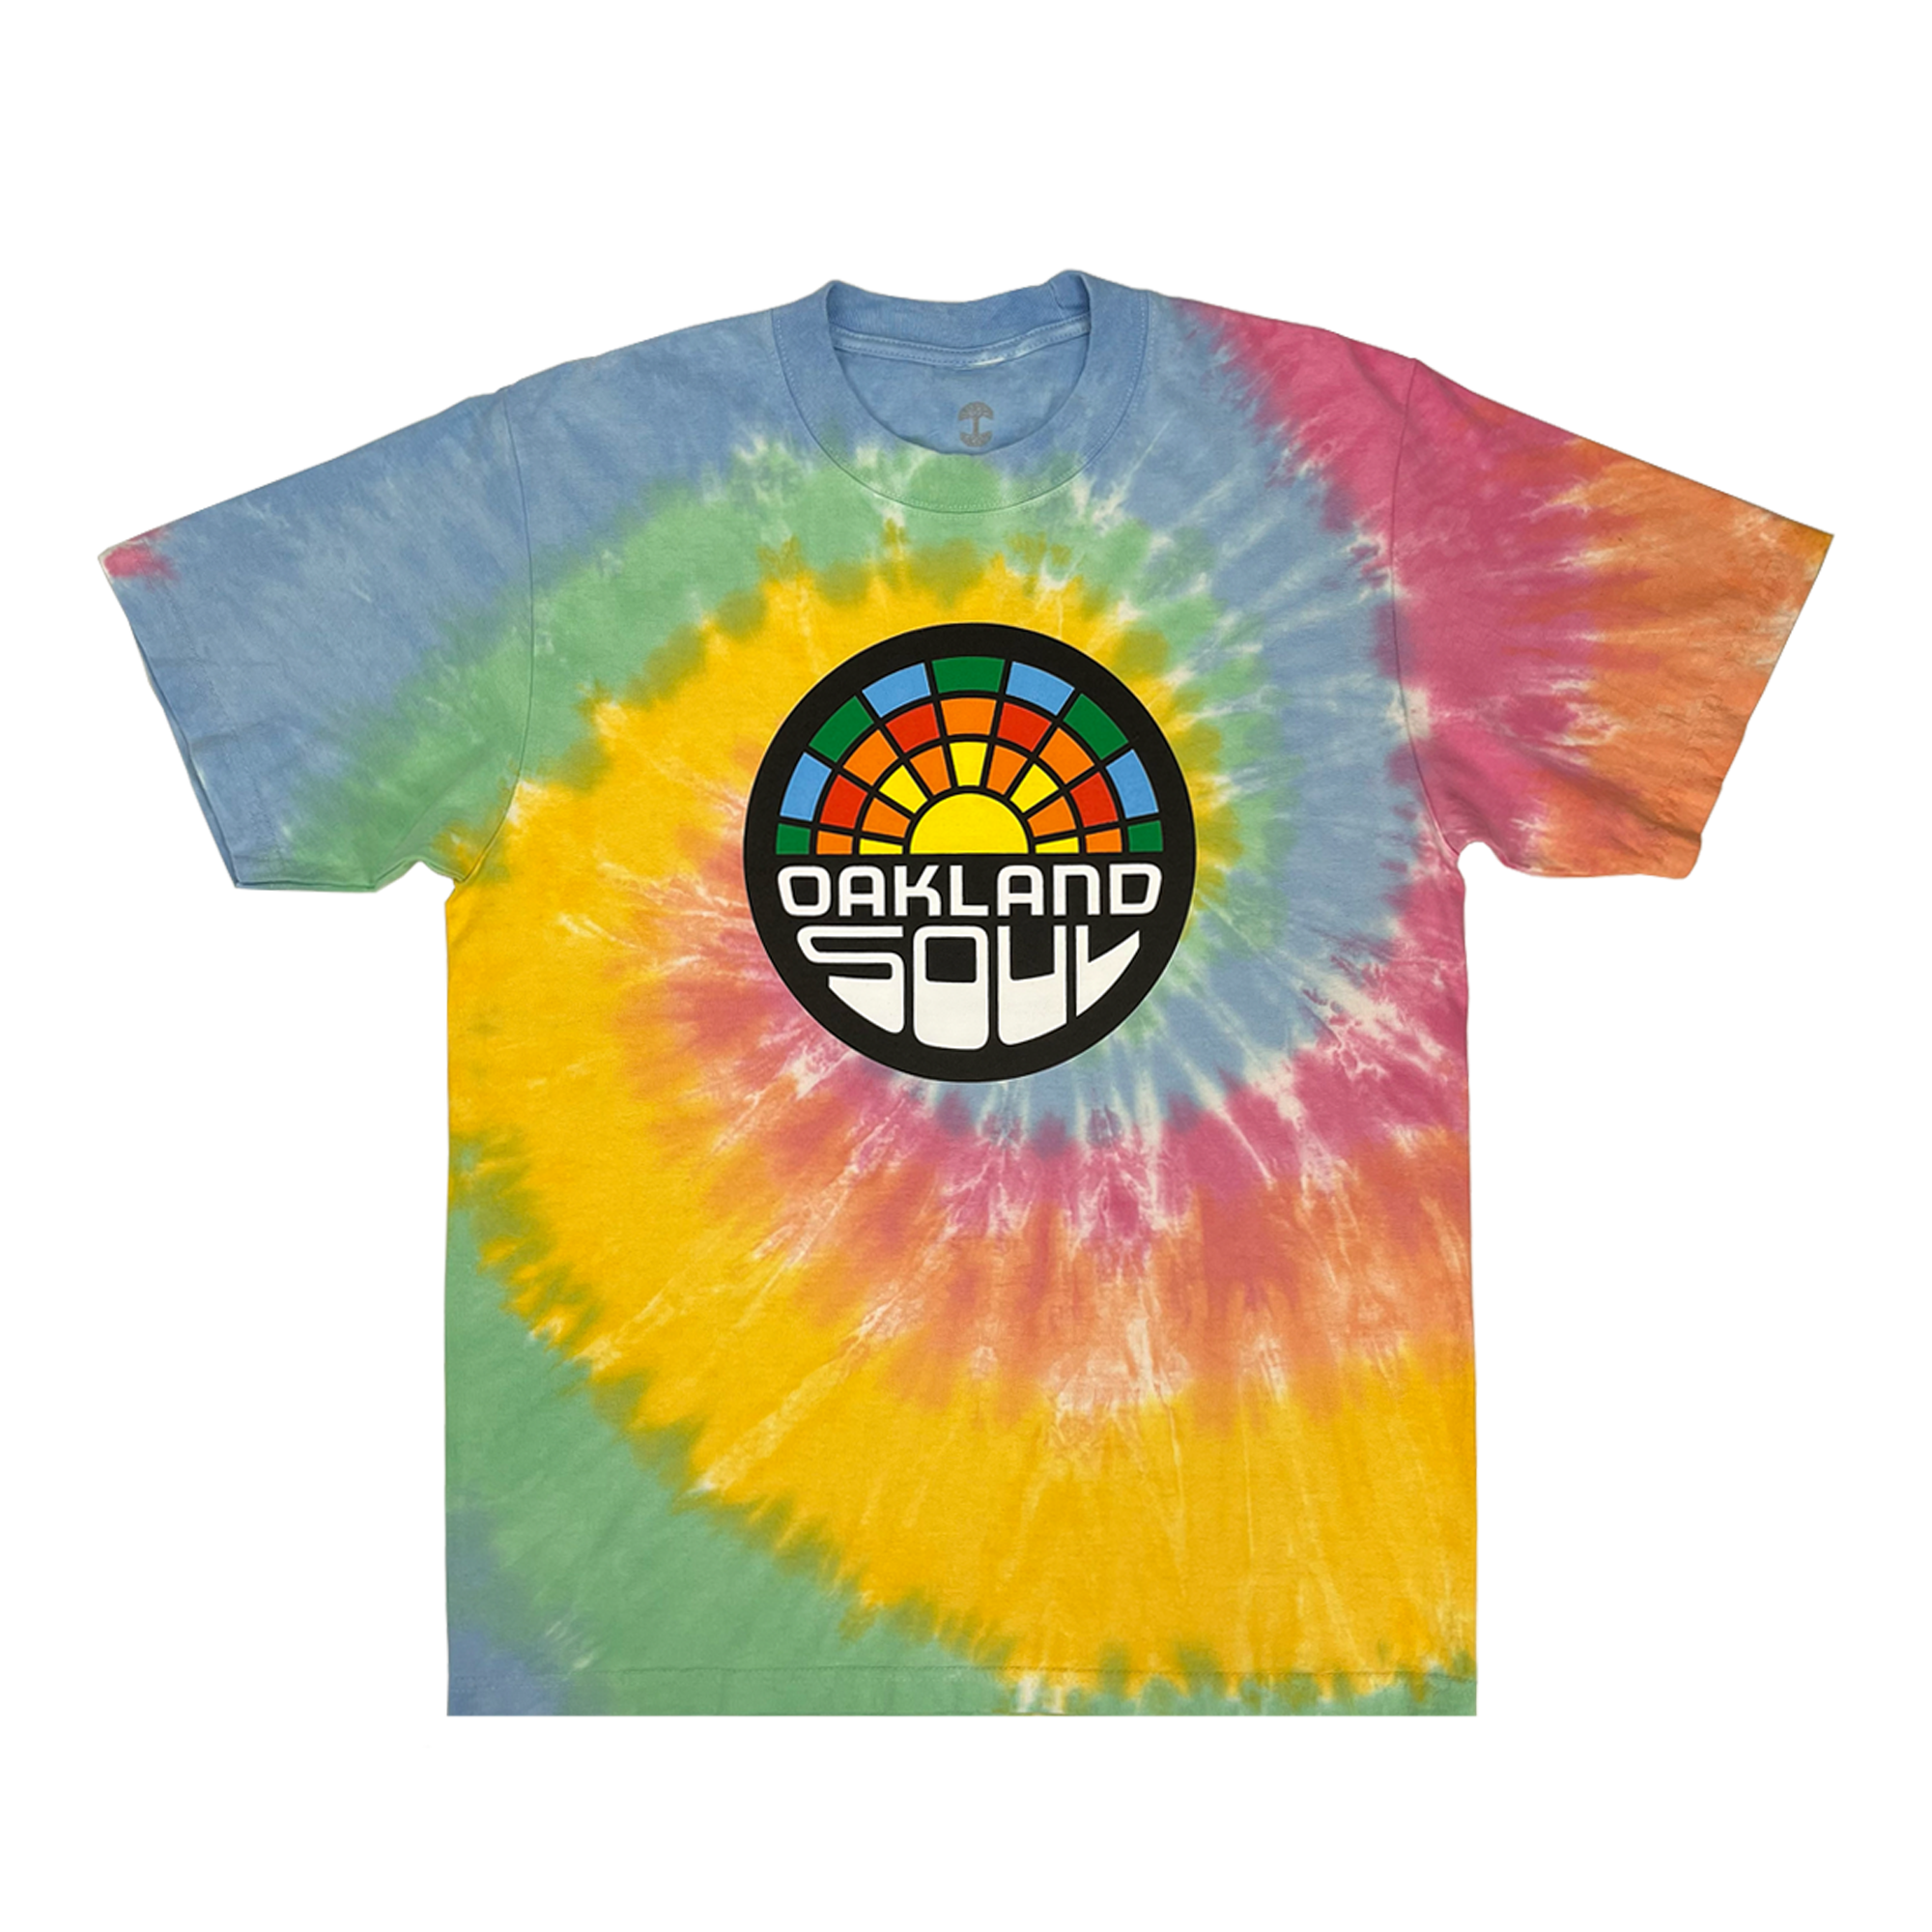 Sherbet Tie dye cotton t-shirt with Oakland Soul SC Crest.